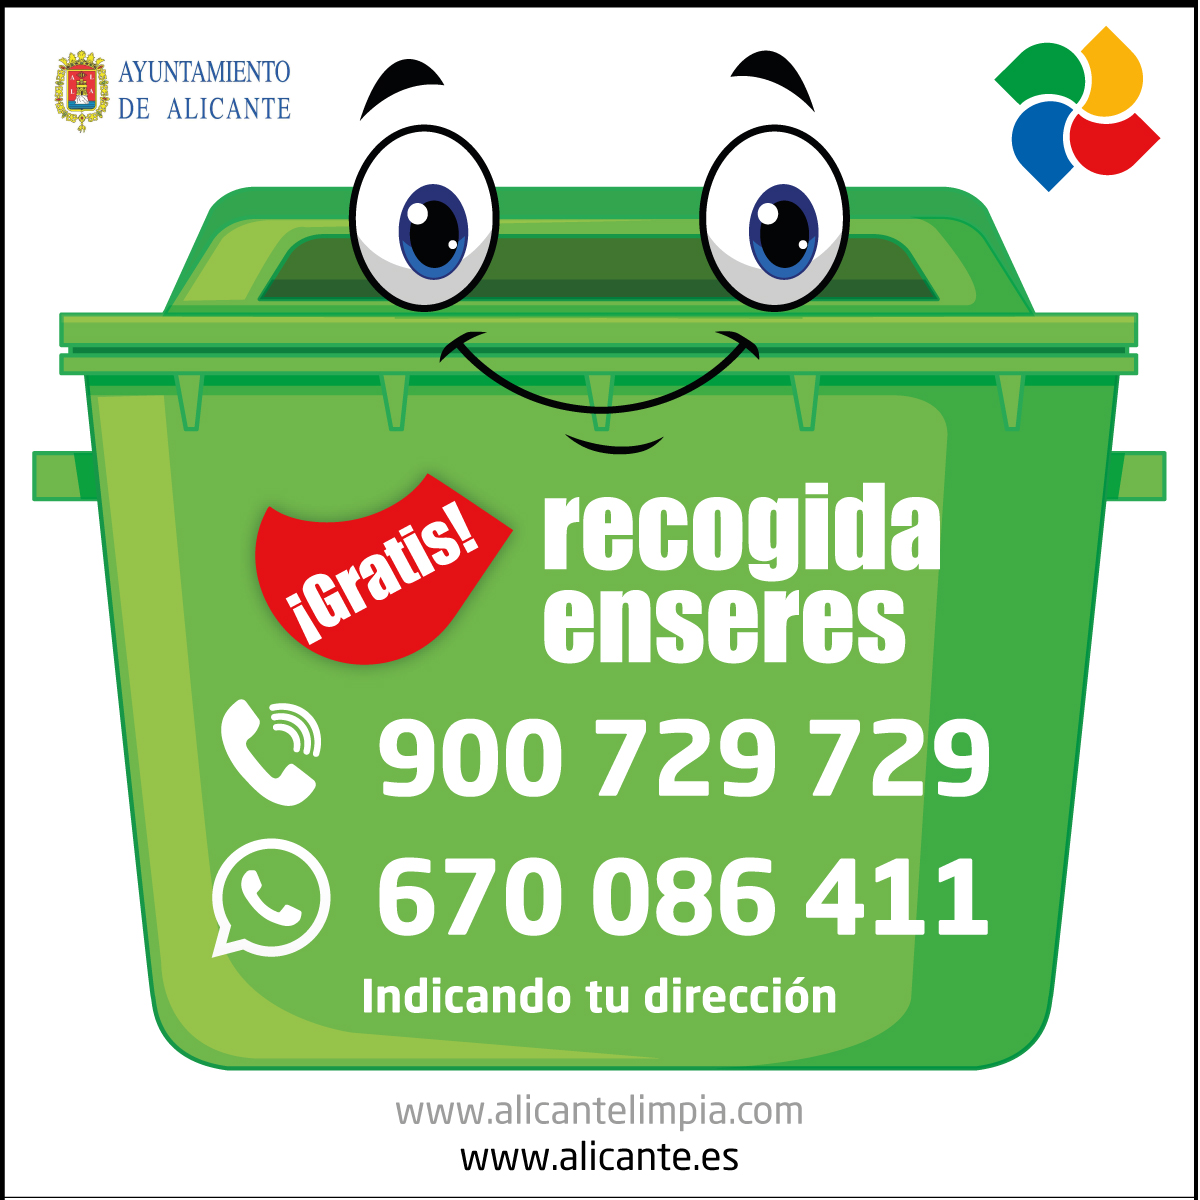 Servicio Gratuito de Recogida Enseres (Muebles y Electrodomésticos) | de Alicante